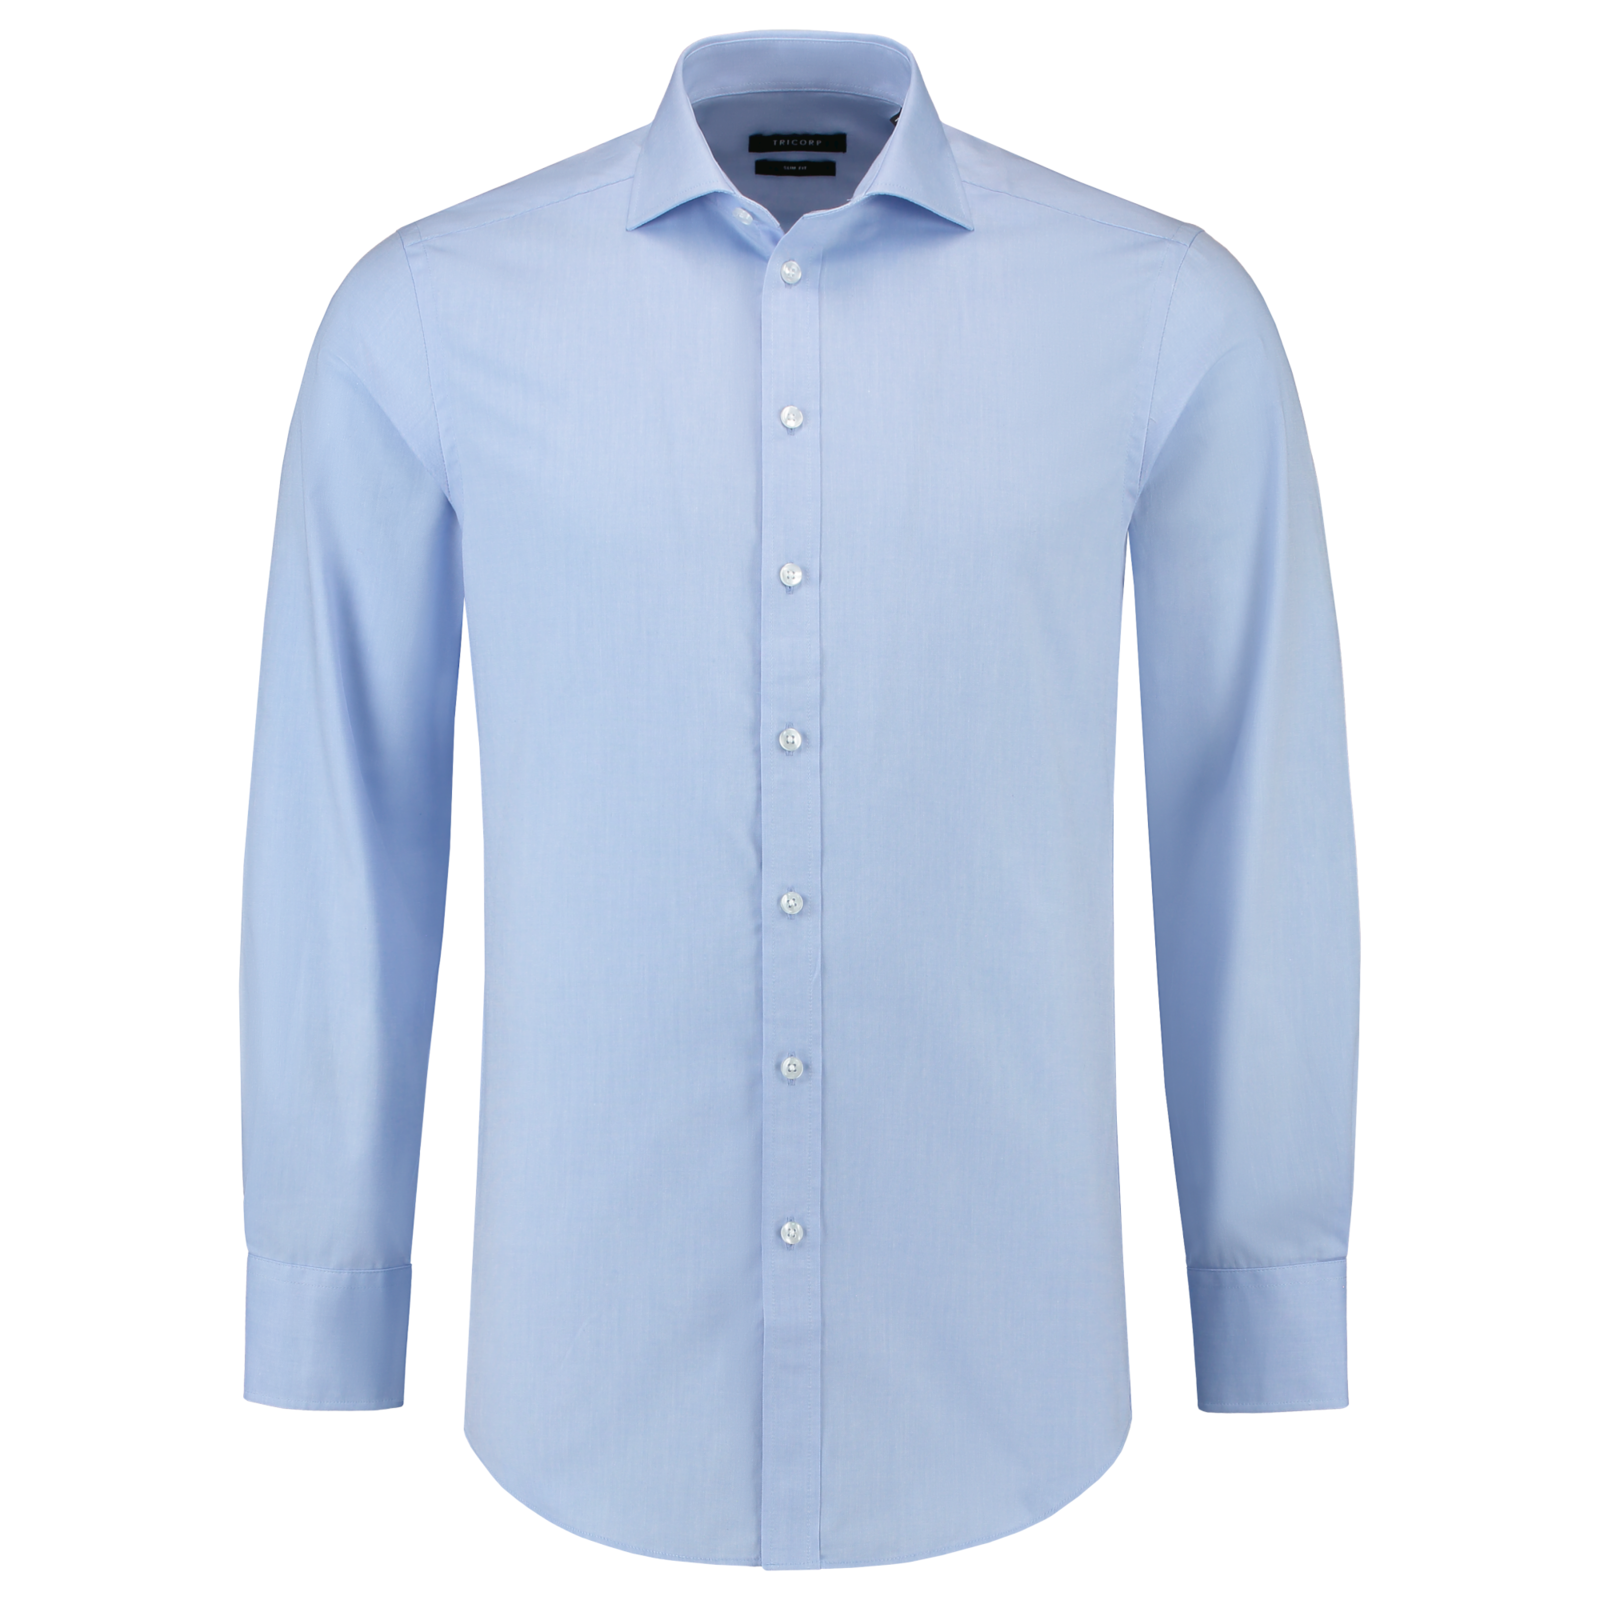 Pánska košeľa s dlhým rukávom Tricorp Fitted Stretch T23 - veľkosť: 39, farba: svetlo modrá